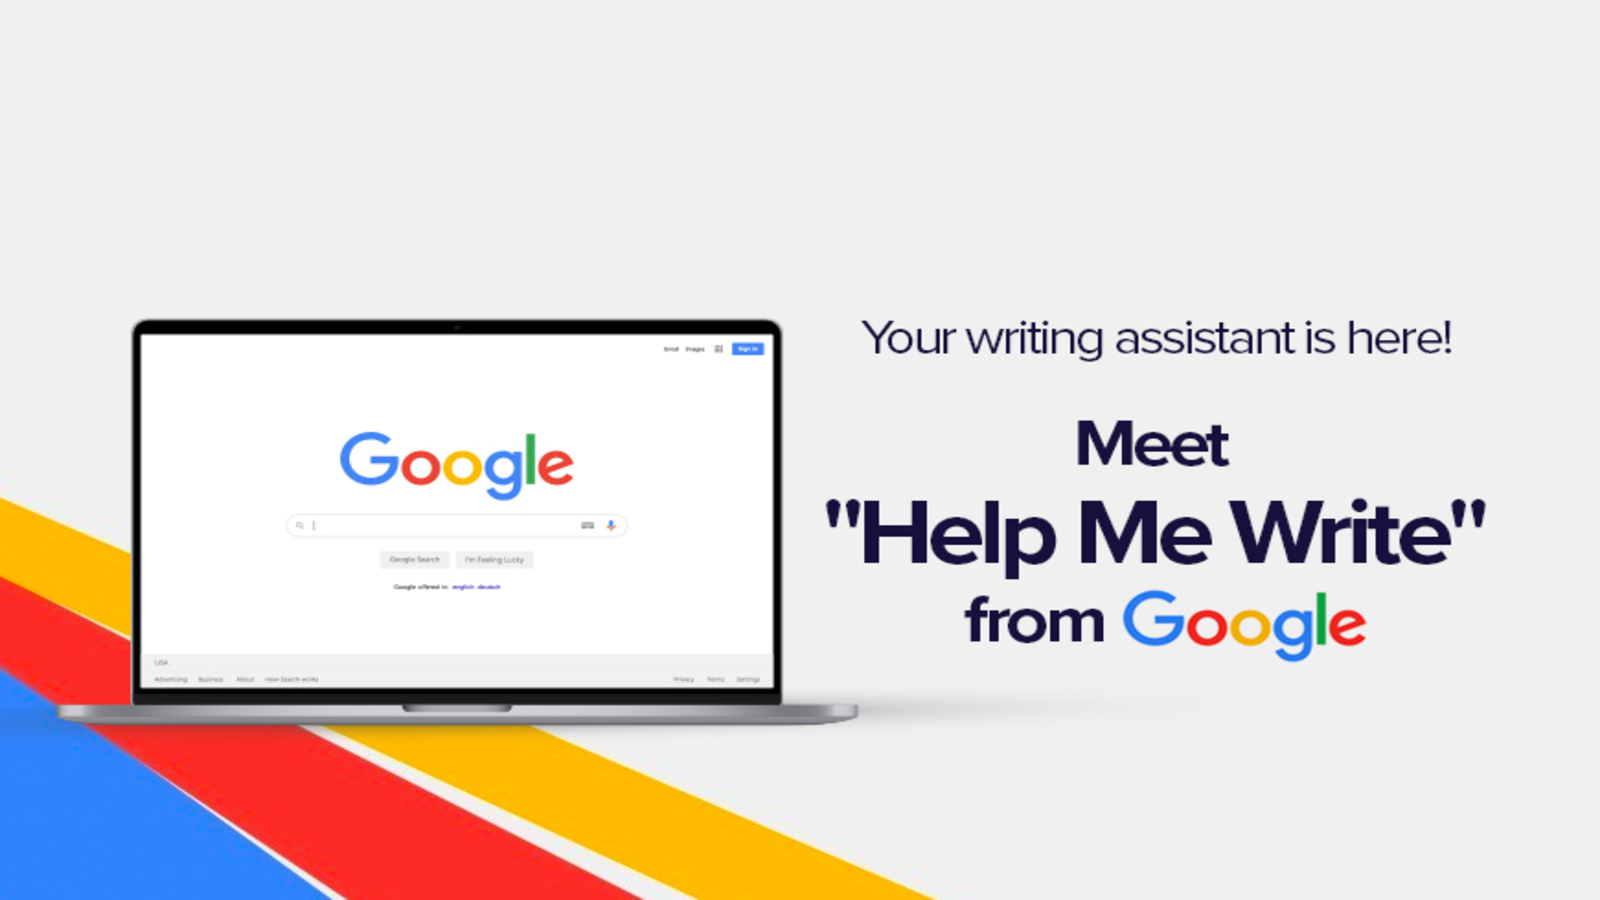 Google Chrome'dan Yazarlığa Destek Olacak Yapay Zekâ Özelliği: Help me write